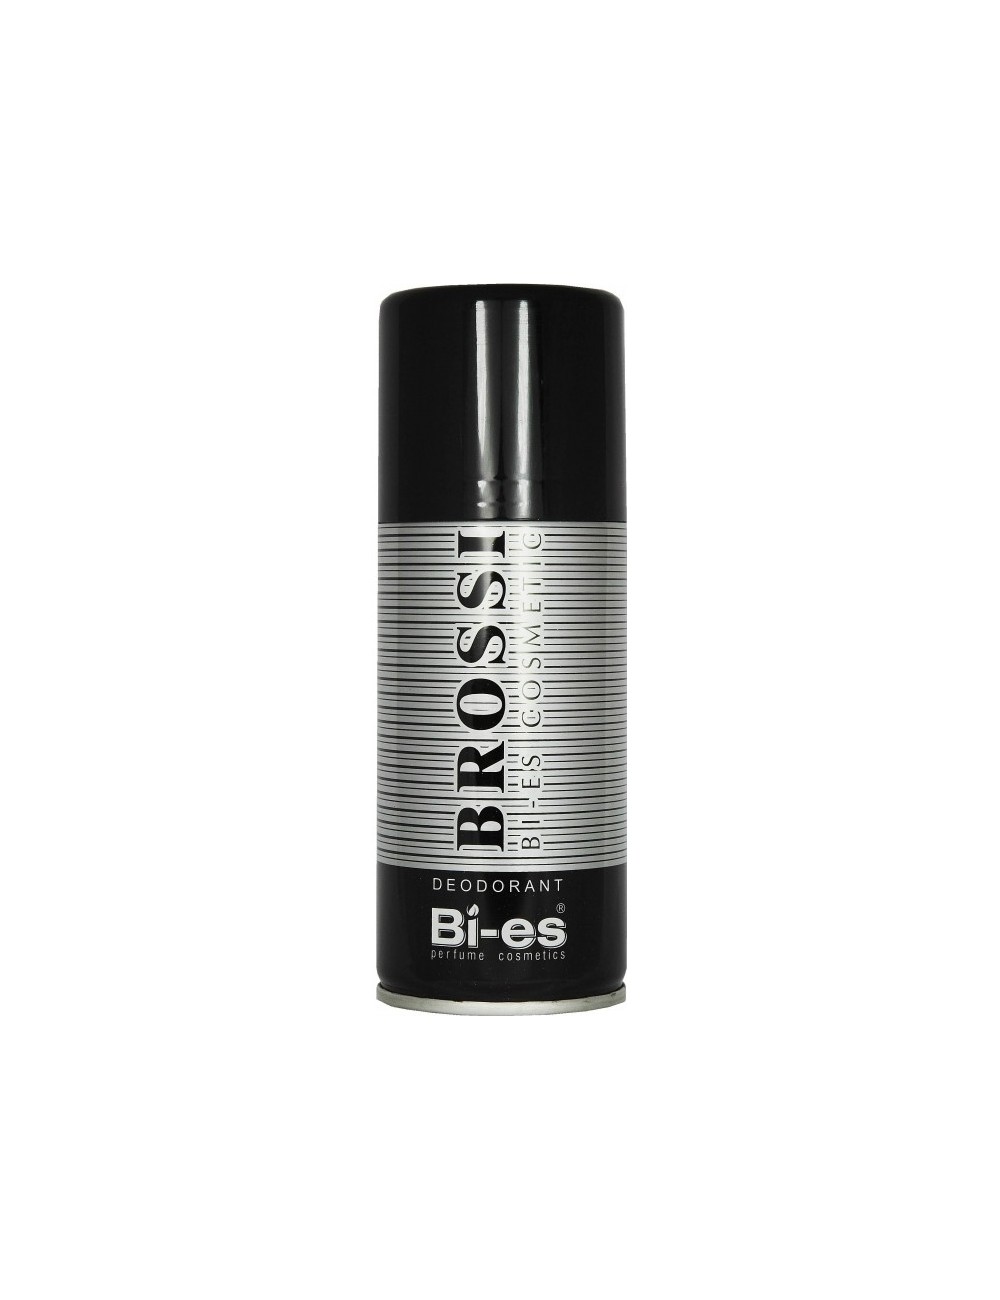 Bi-es Brossi 150ml – dezodorant spray dla mężczyzn